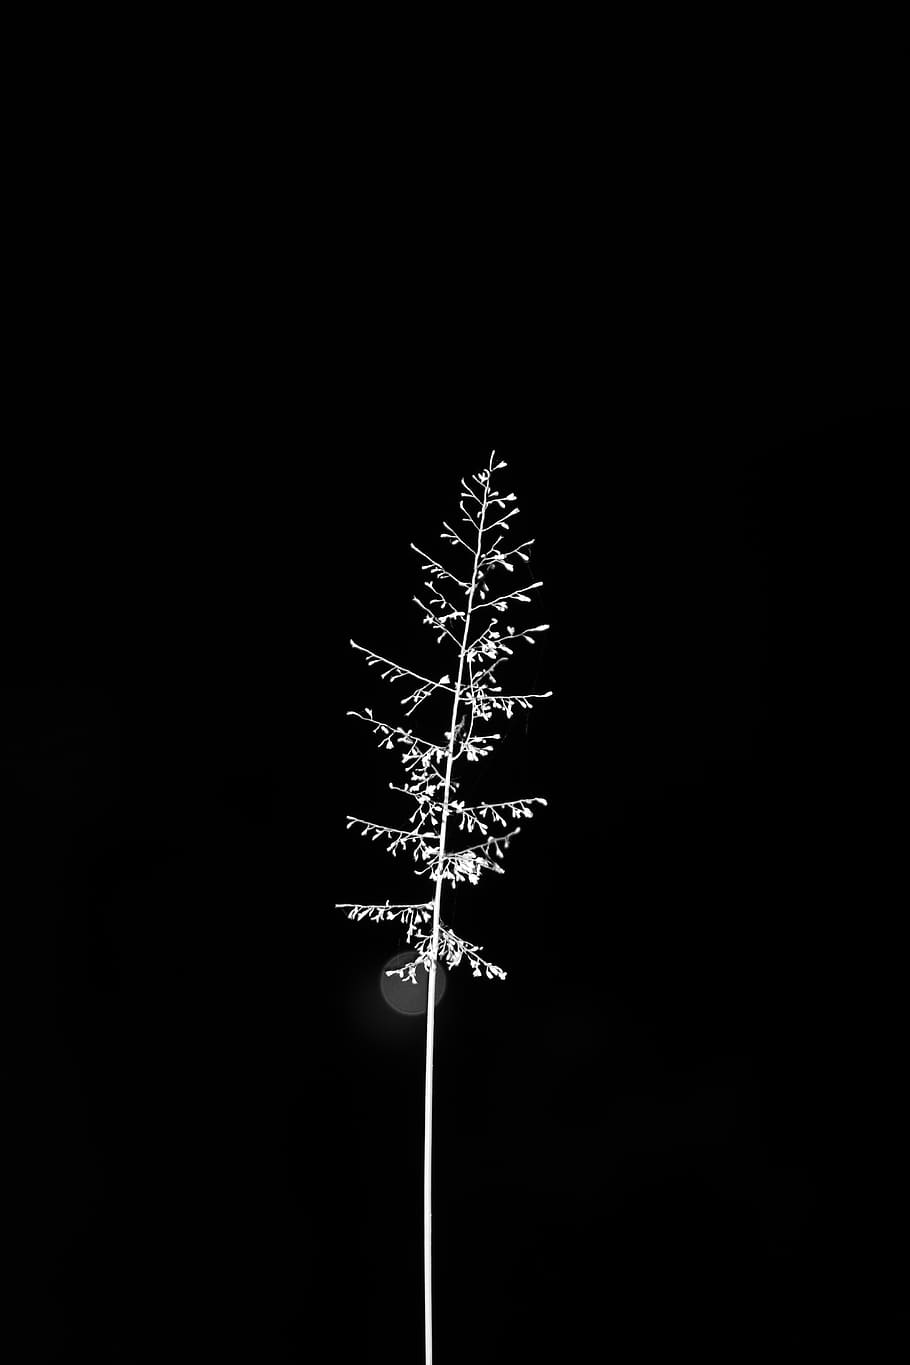 White Flower, art, black and white, black-and-white, dark, minimalism